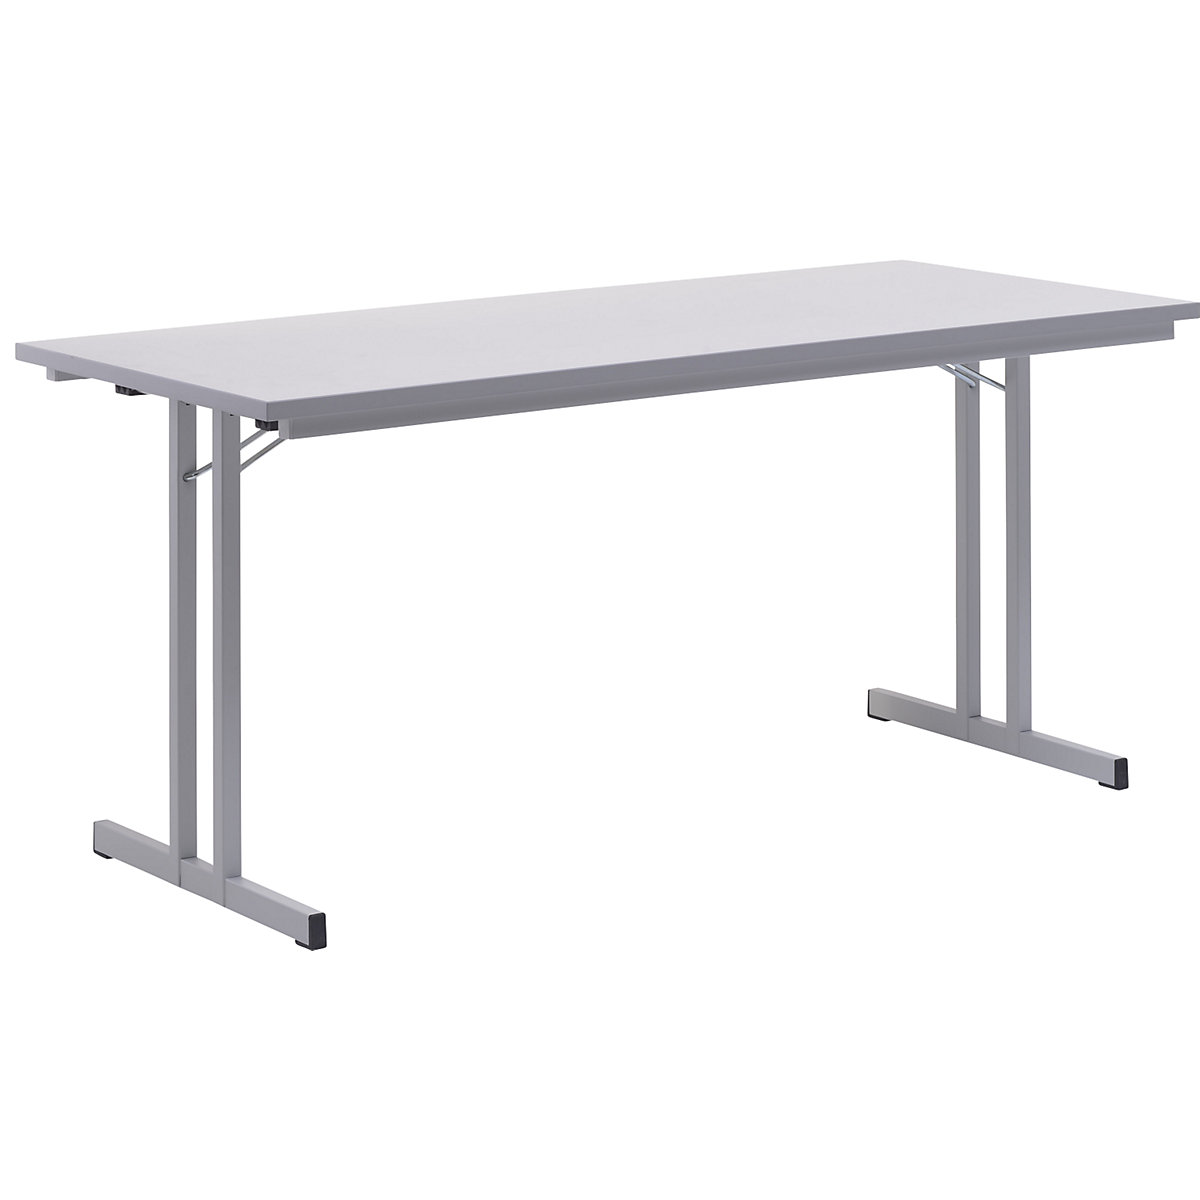 Sklápací stôl, s extra hrubou doskou, výška 720 mm, 1600 x 700 mm, podstavec svetlošedá, doska svetlošedá